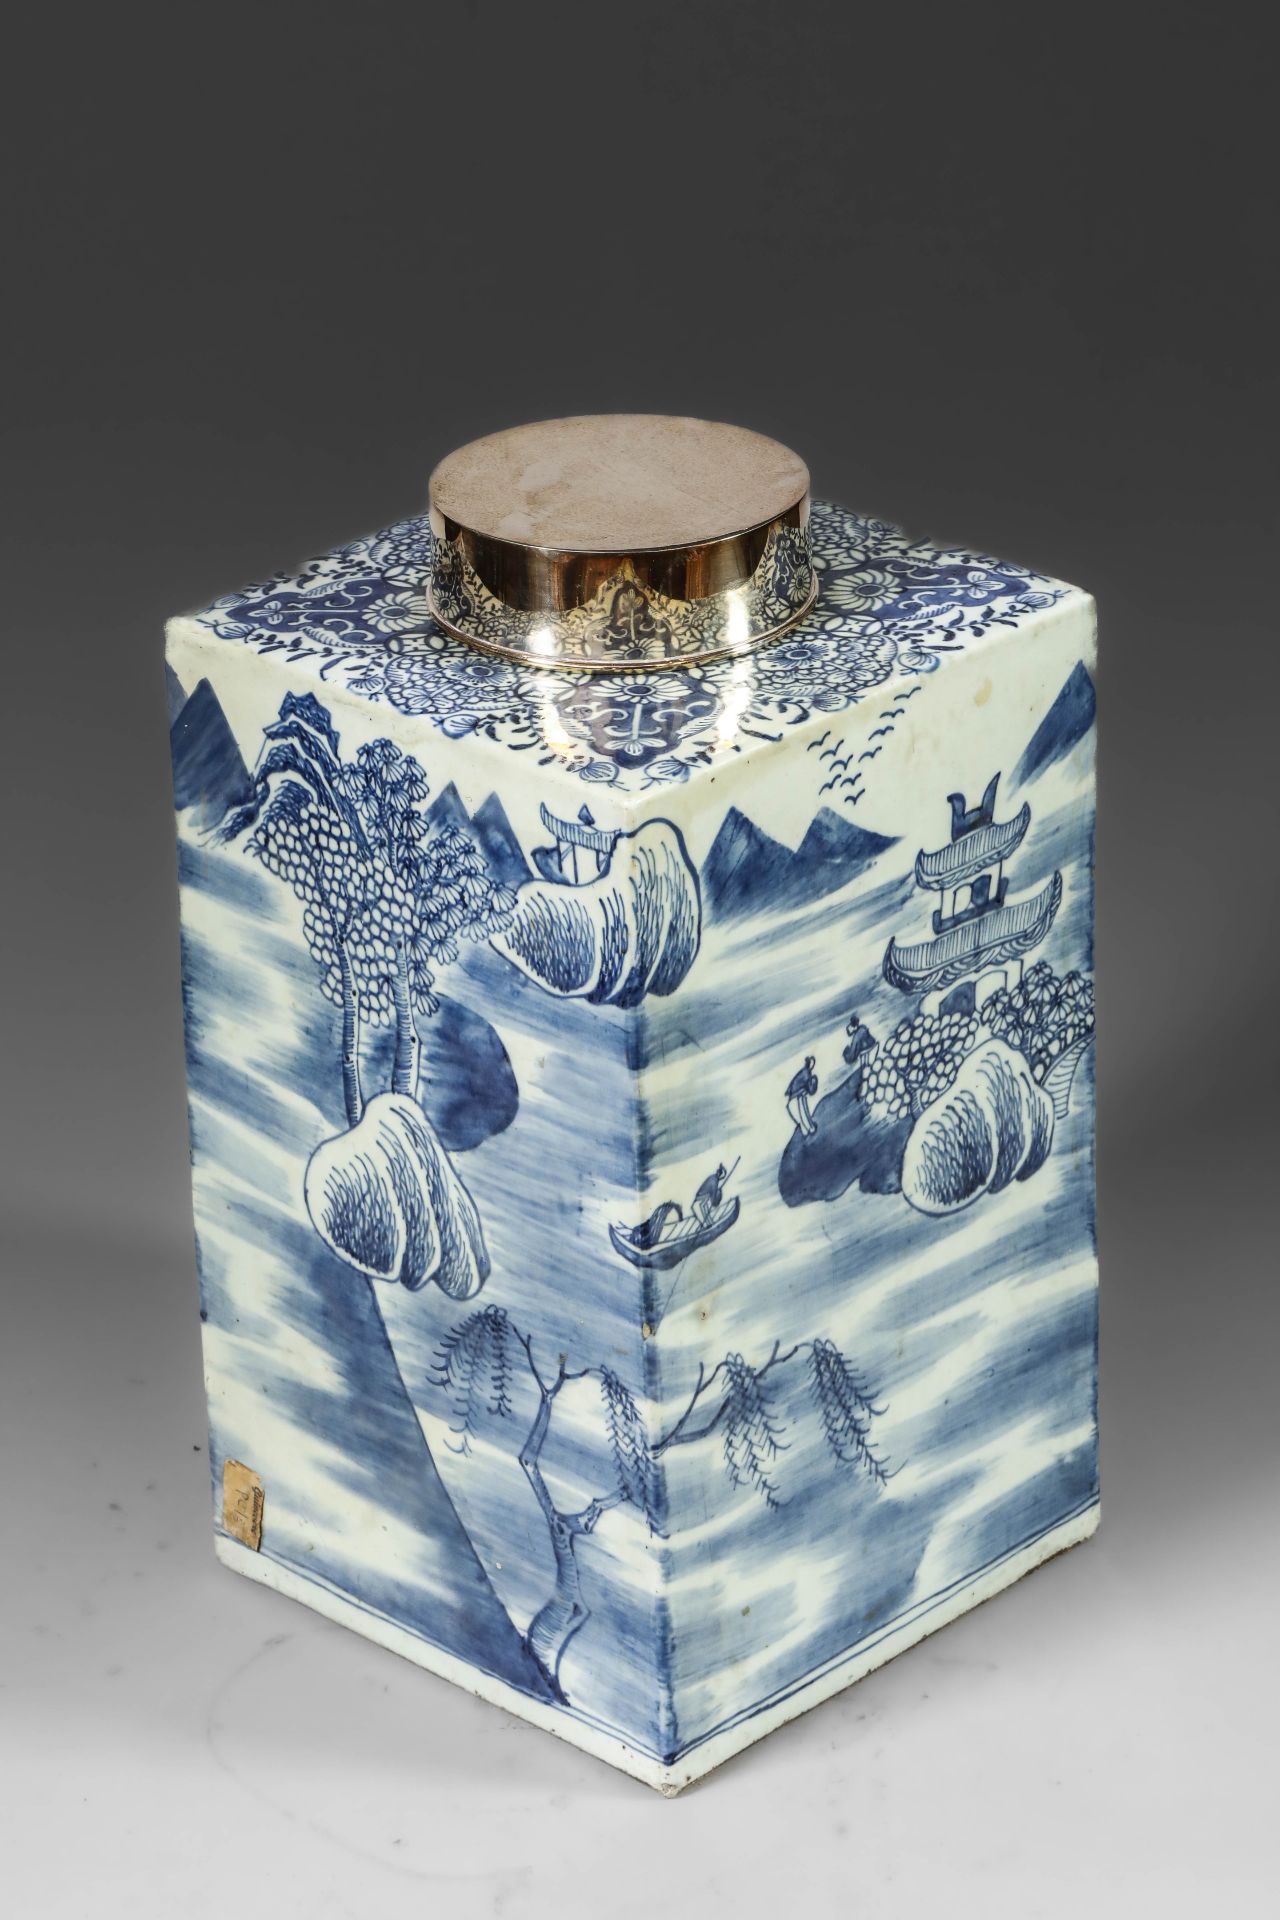 Suite de neuf pots à thé quadrangulaire en porcelaine blanche décoré en bleu sous couverte de - Image 14 of 47